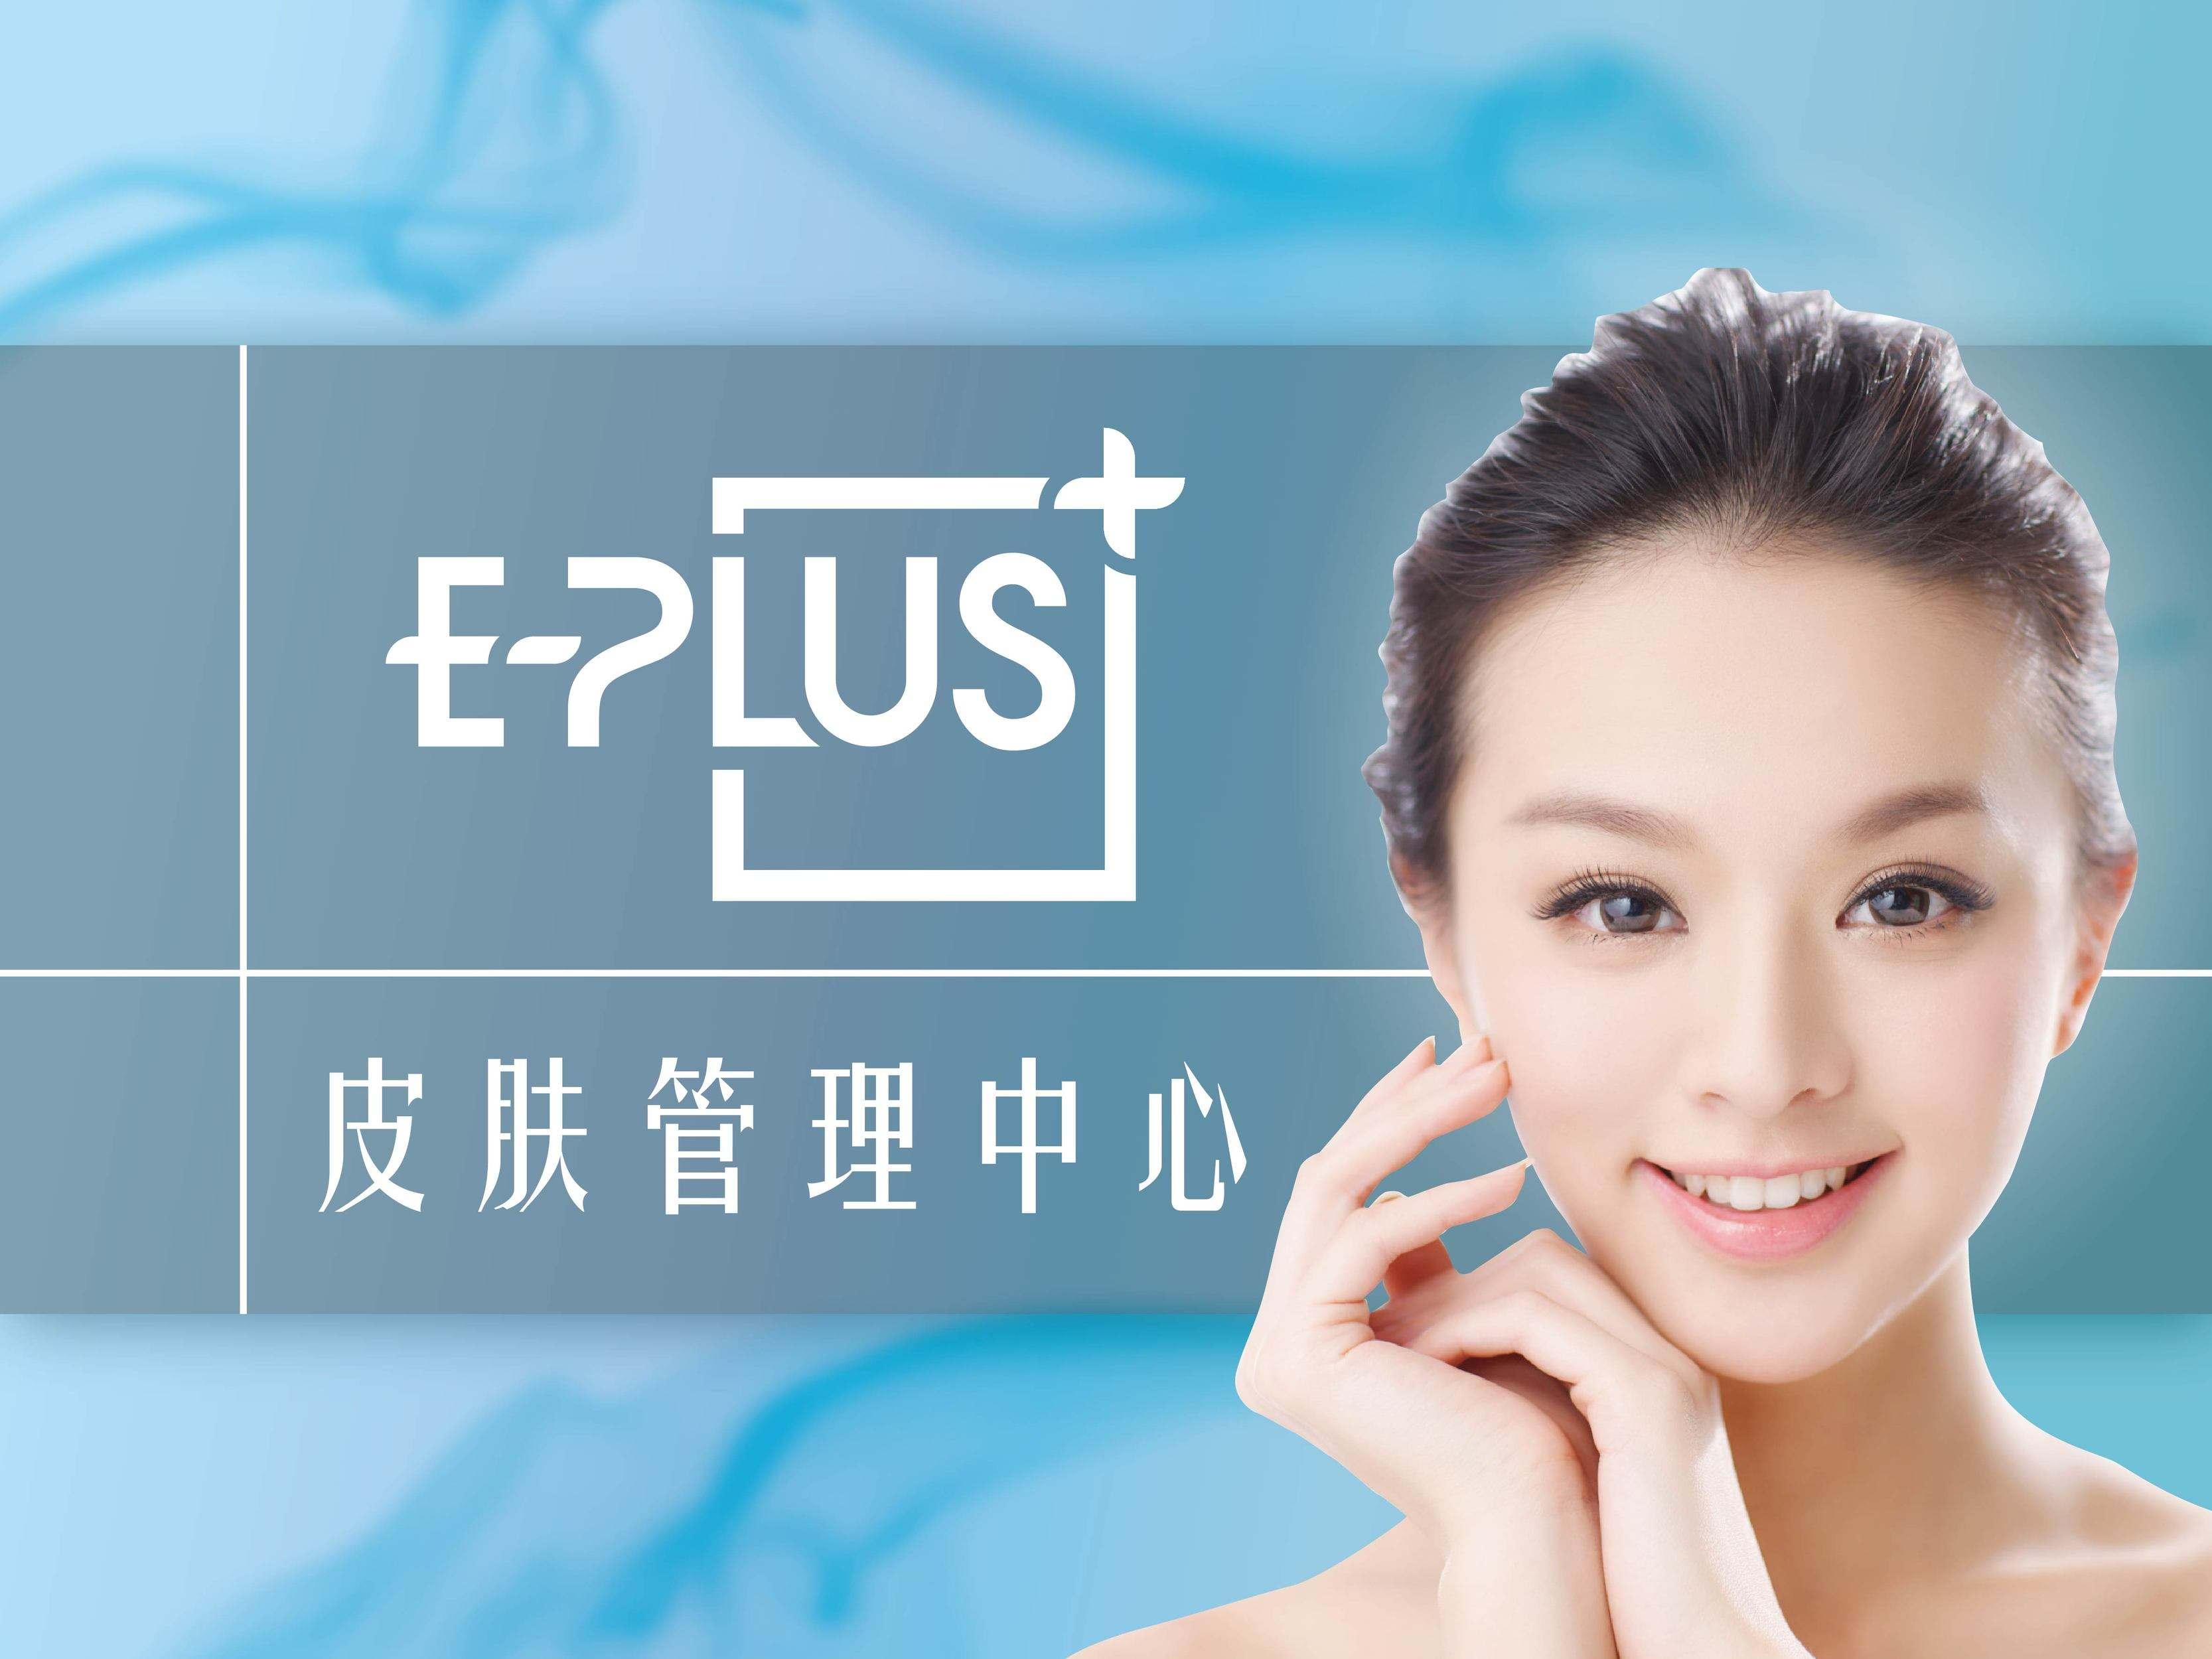 E-plus皮肤管理加盟